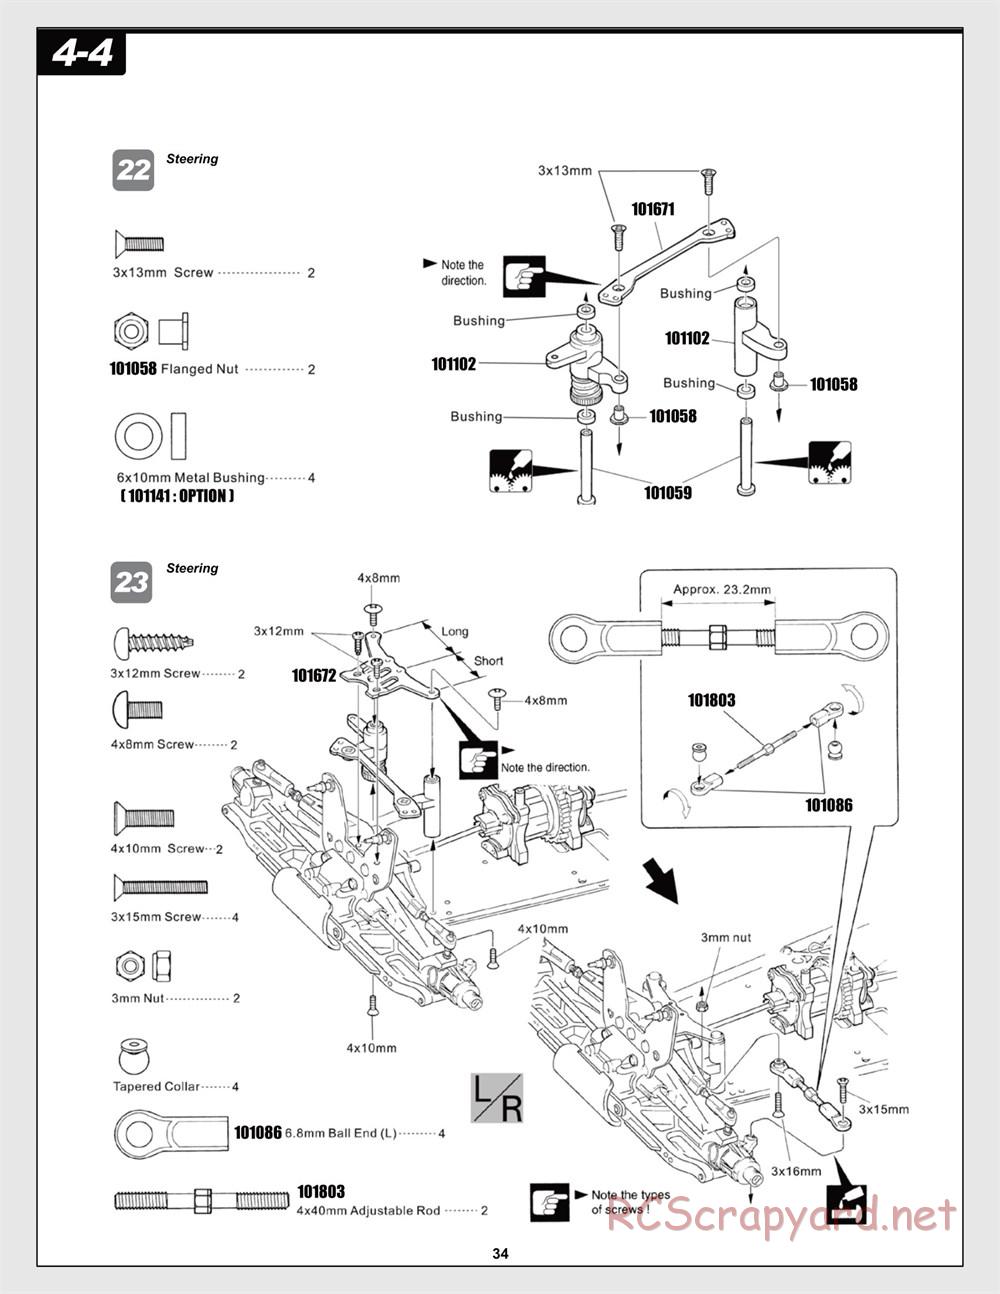 HPI - Trophy Flux Buggy - Manual - Page 34